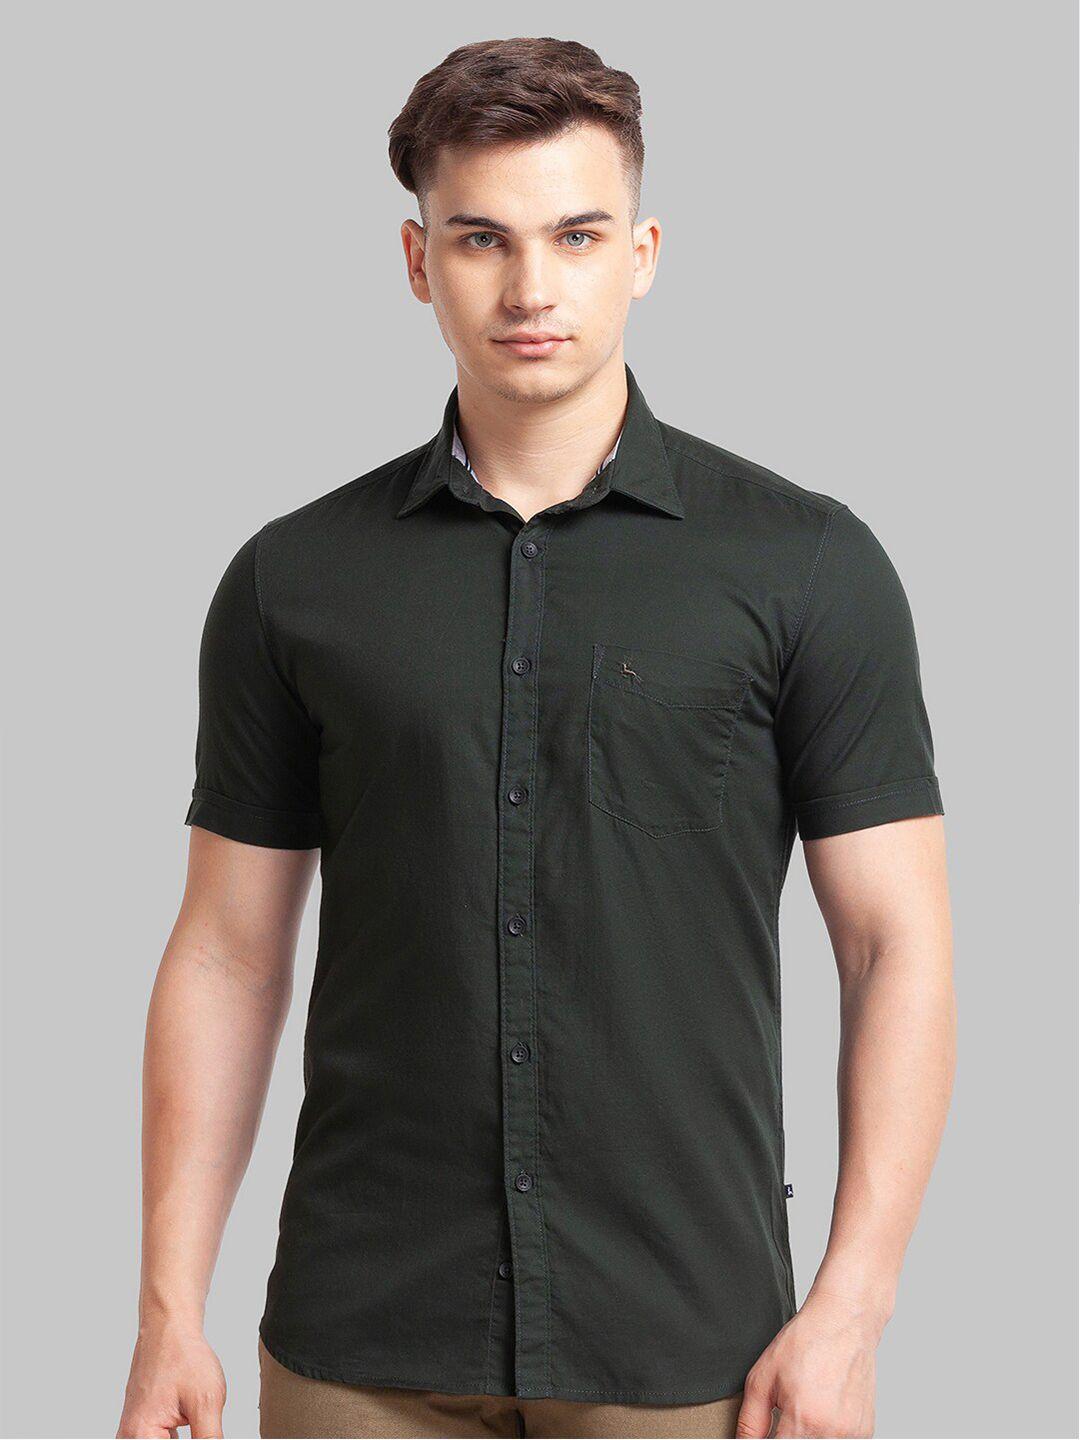 parx-men-slim-fit-casual-cotton-shirt